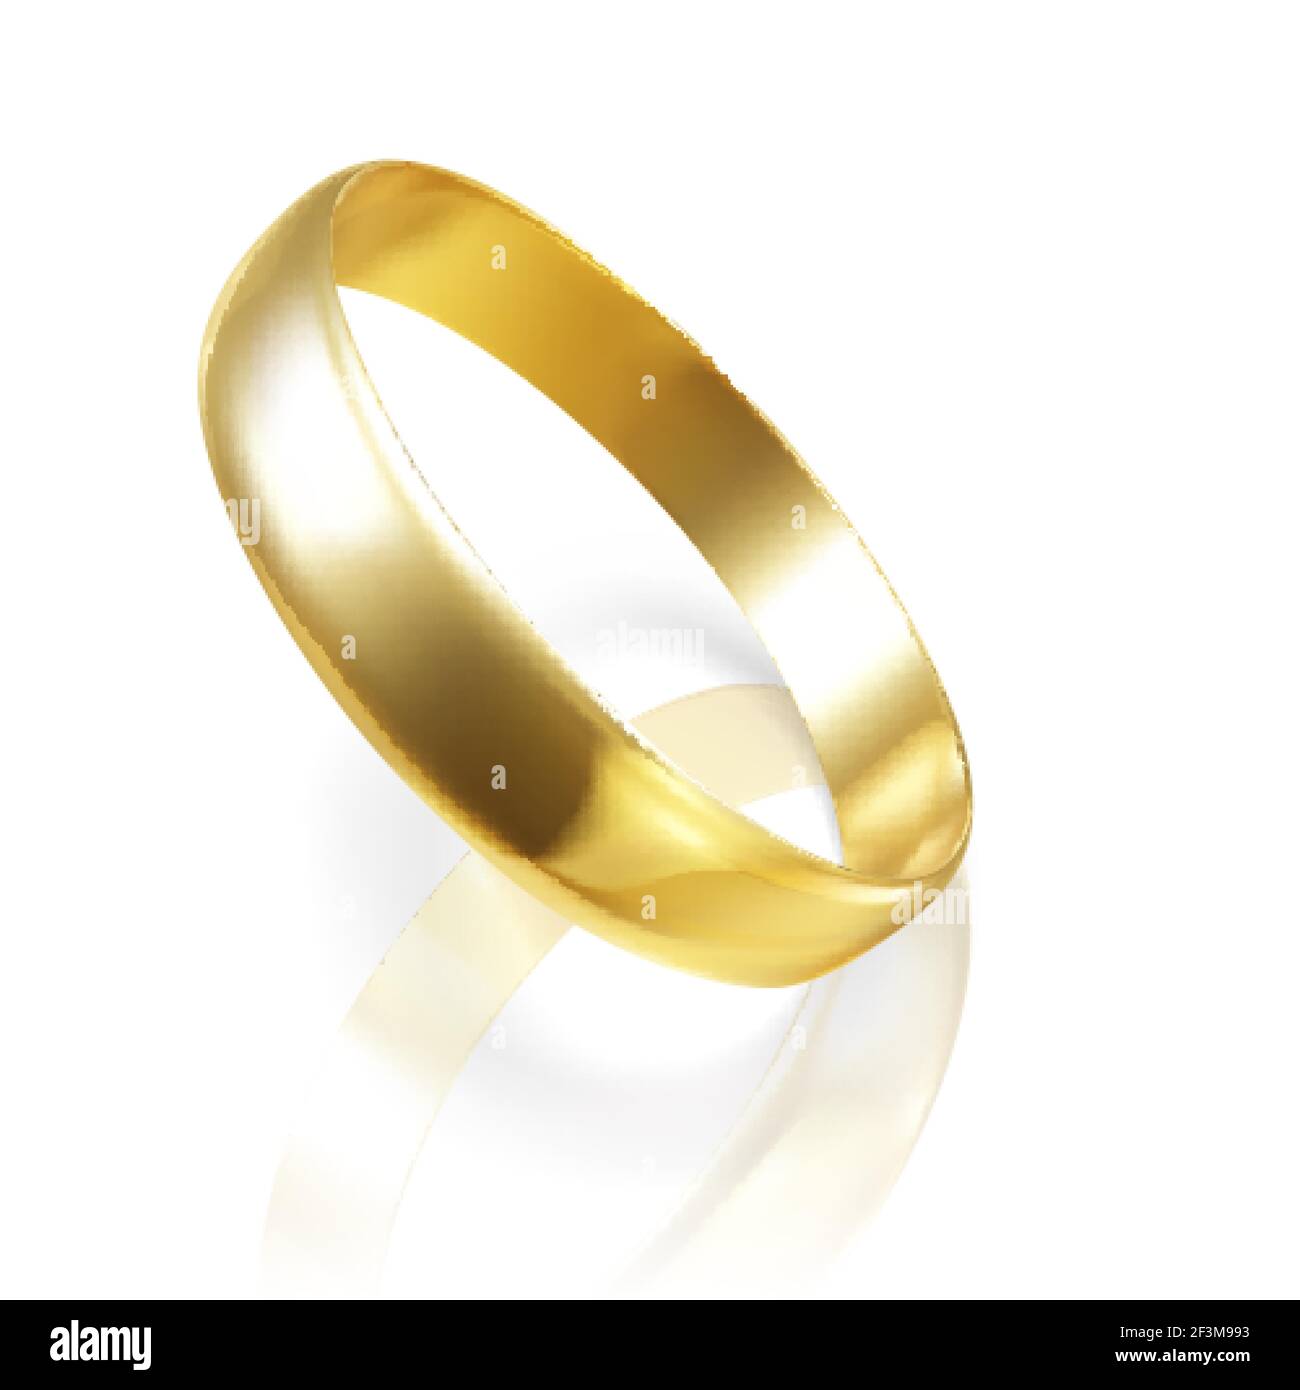 Anello di nozze d'oro realistico. Rendering 3D dell'anello dorato. Illustrazione vettoriale Illustrazione Vettoriale